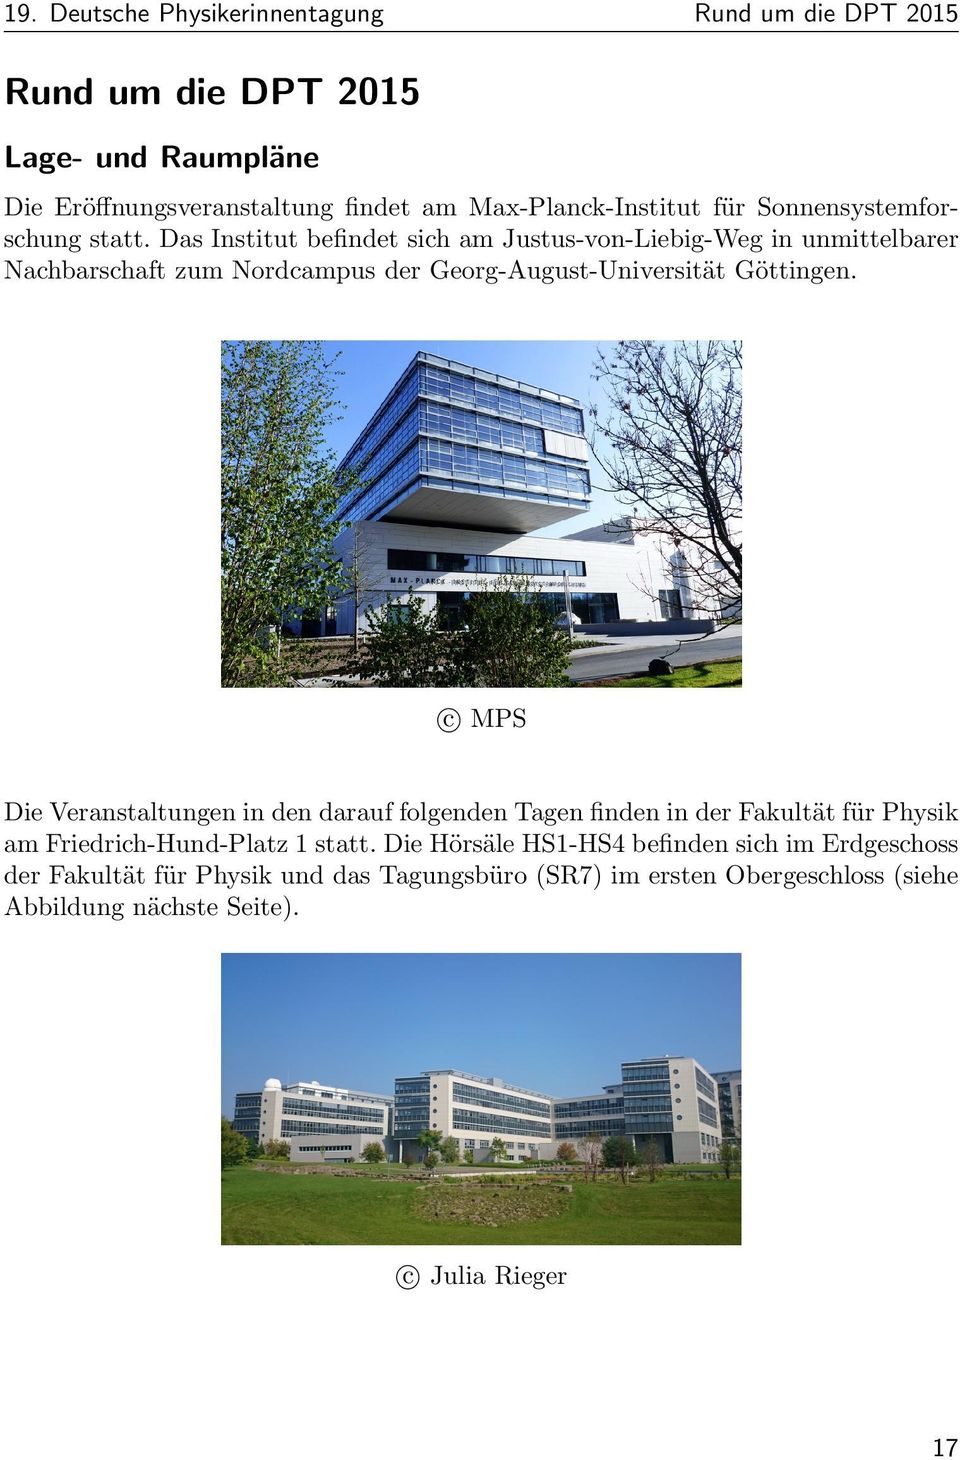 Das Institut befindet sich am Justus-von-Liebig-Weg in unmittelbarer Nachbarschaft zum Nordcampus der Georg-August-Universita t Go ttingen.